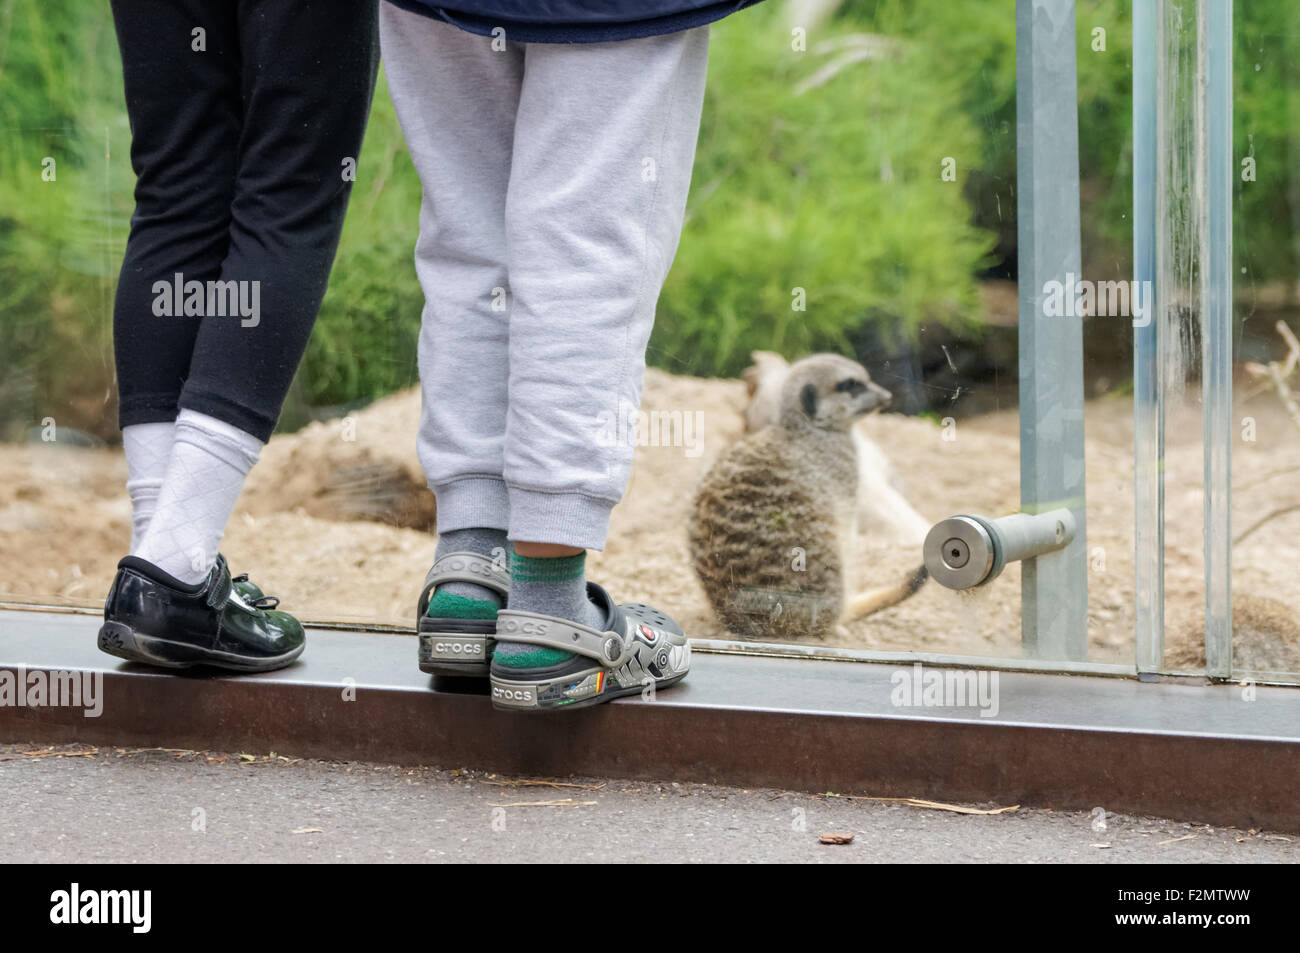 Les suricates au ZSL Zoo de Londres, Londres Angleterre Royaume-Uni UK Banque D'Images